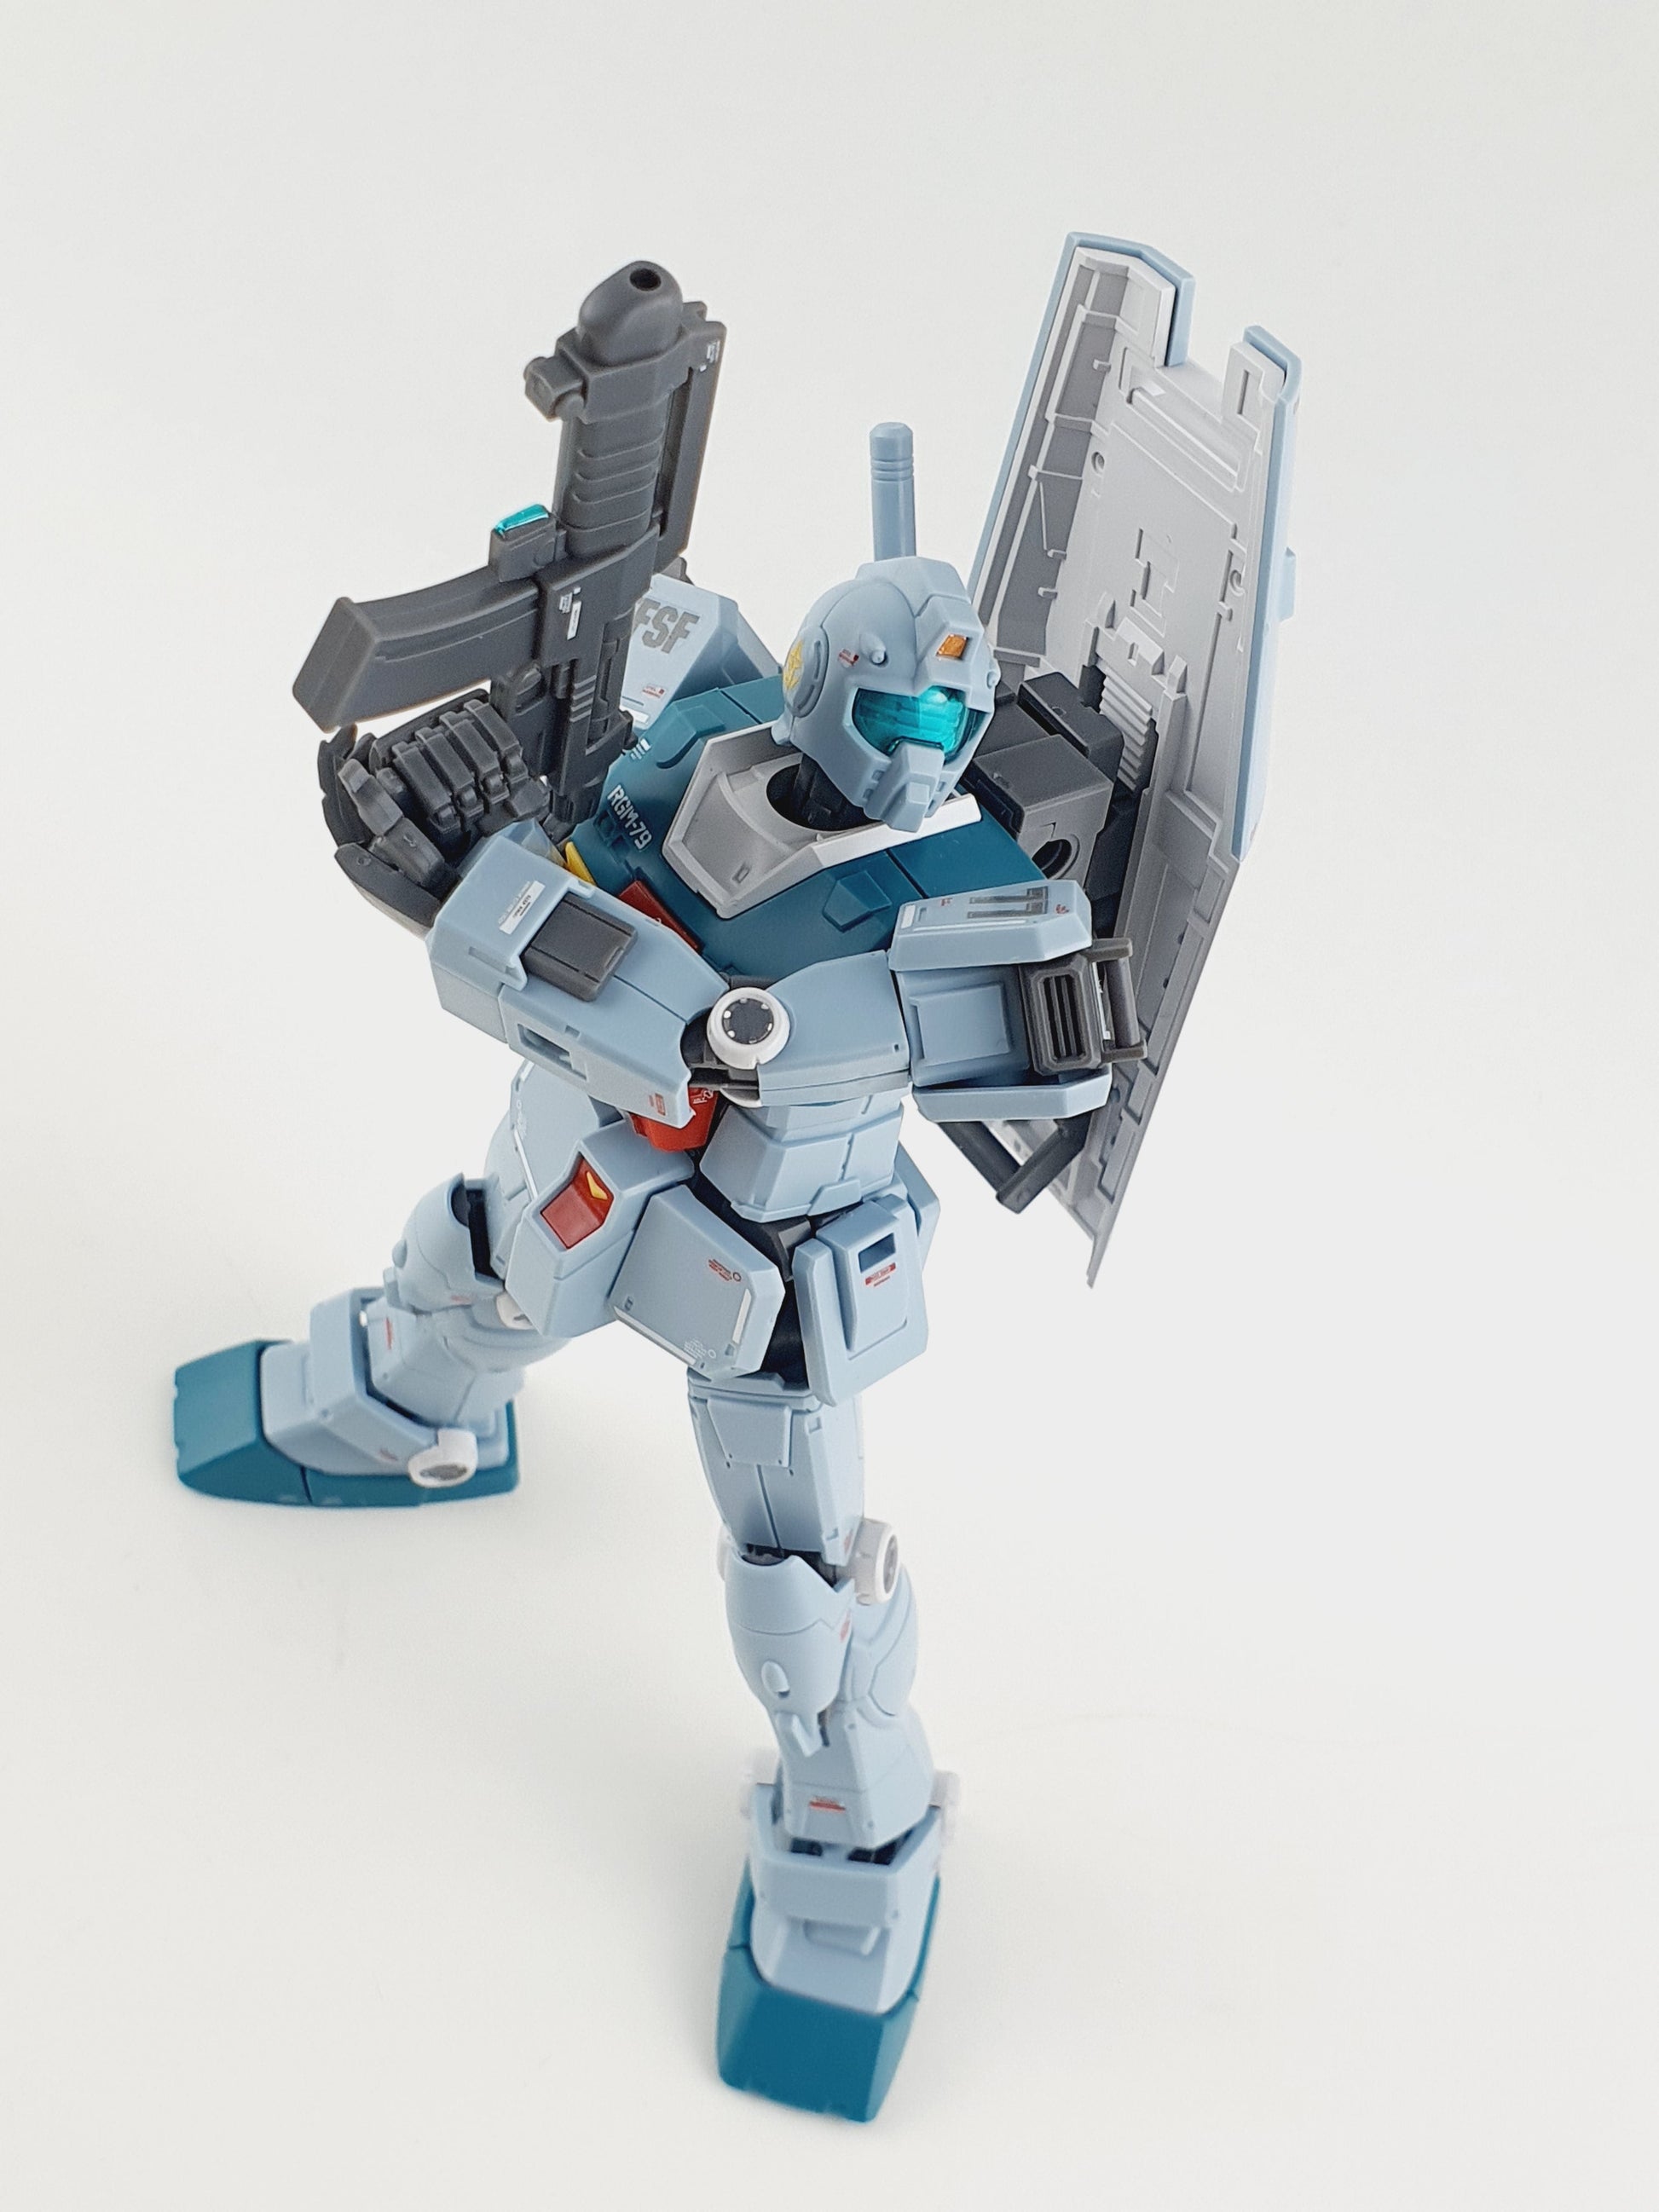 MR.] Gundam Marker GM / EX Series - DelpiDecal